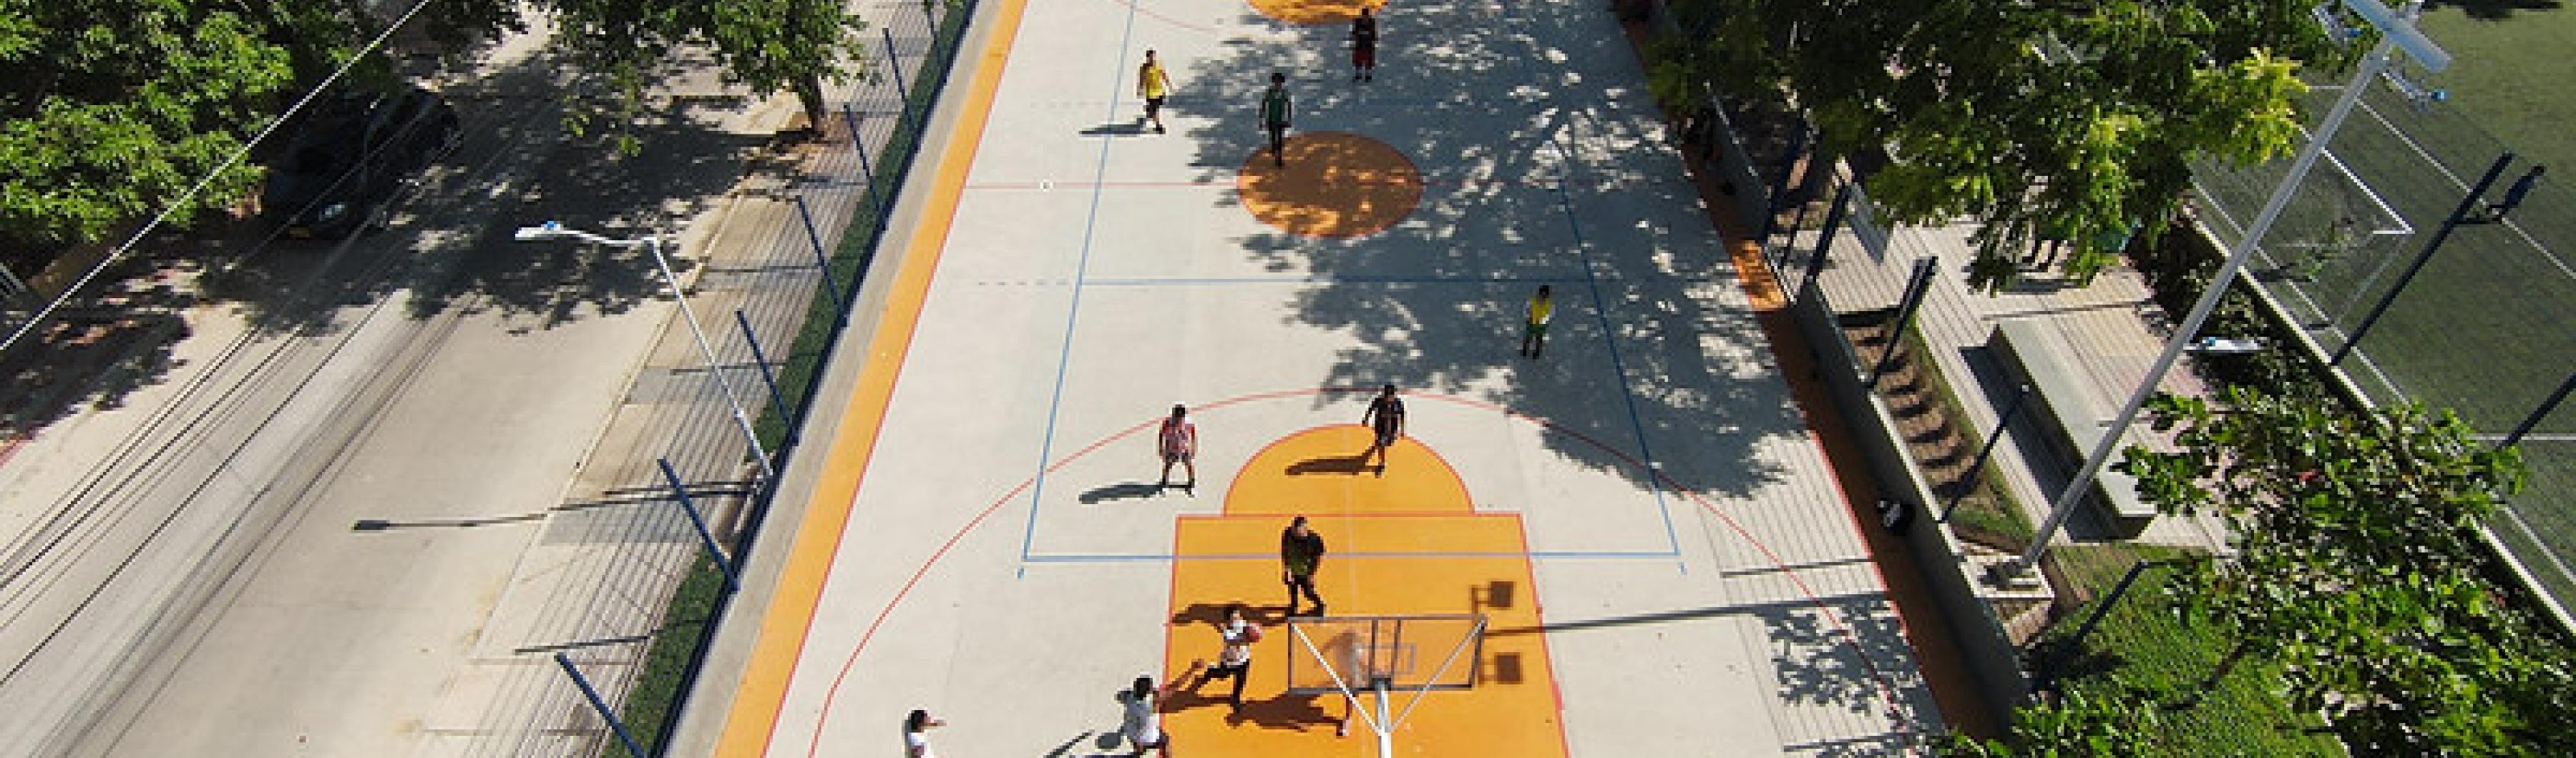 Vista aérea de uma quadra de basquete cercada por árvores em Barranquilla, Colômbia